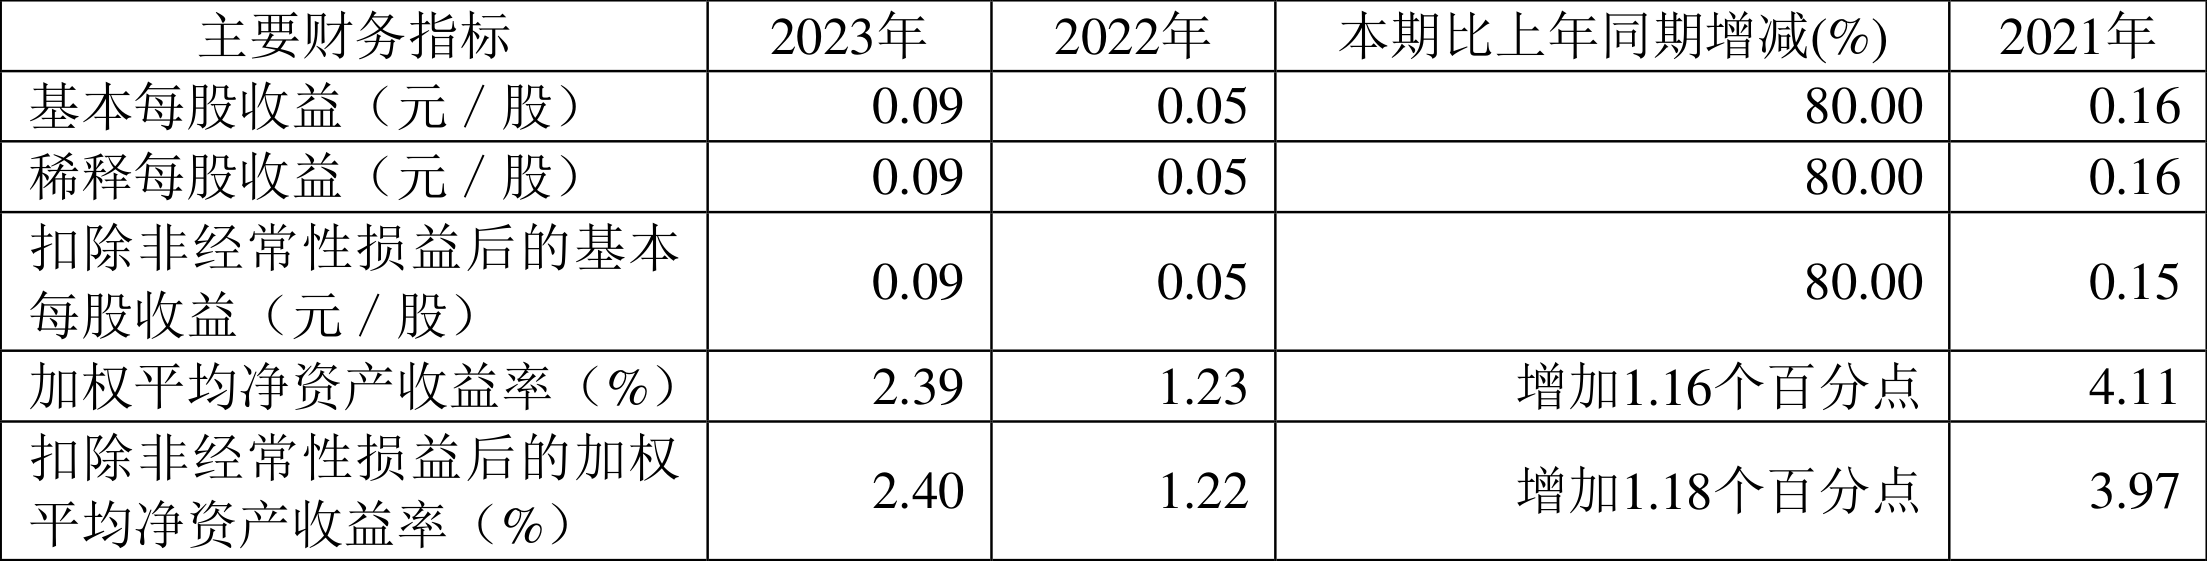 西南证券：2023年净利同比增长94.63% 拟10派0.35元